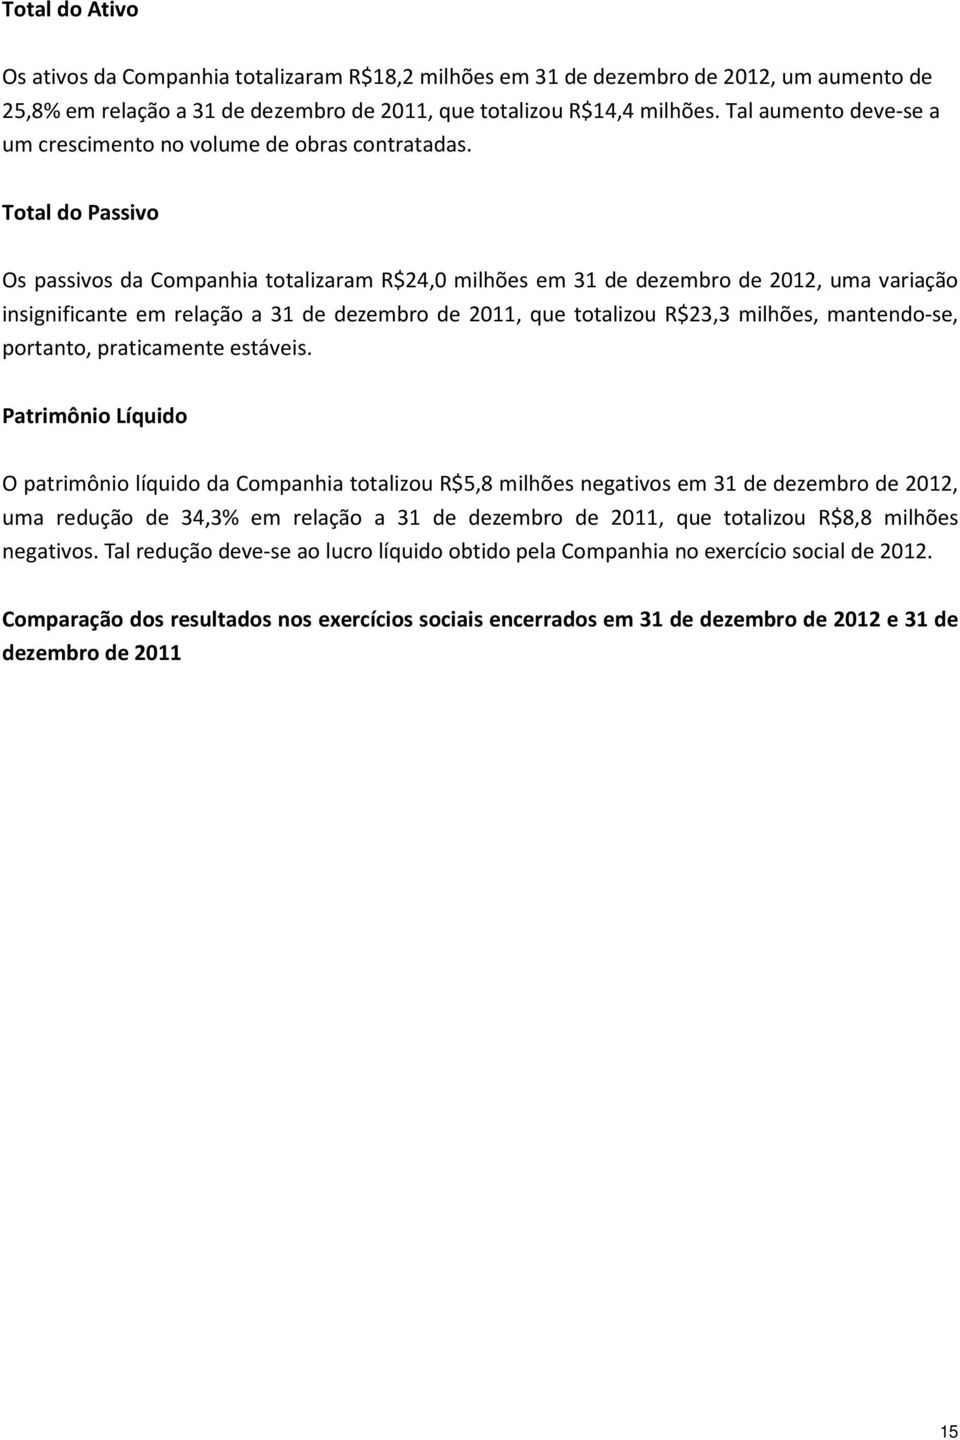 Total do Passivo Os passivos da Companhia totalizaram R$24,0 milhões em 31 de dezembro de 2012, uma variação insignificante em relação a 31 de dezembro de 2011, que totalizou R$23,3 milhões,